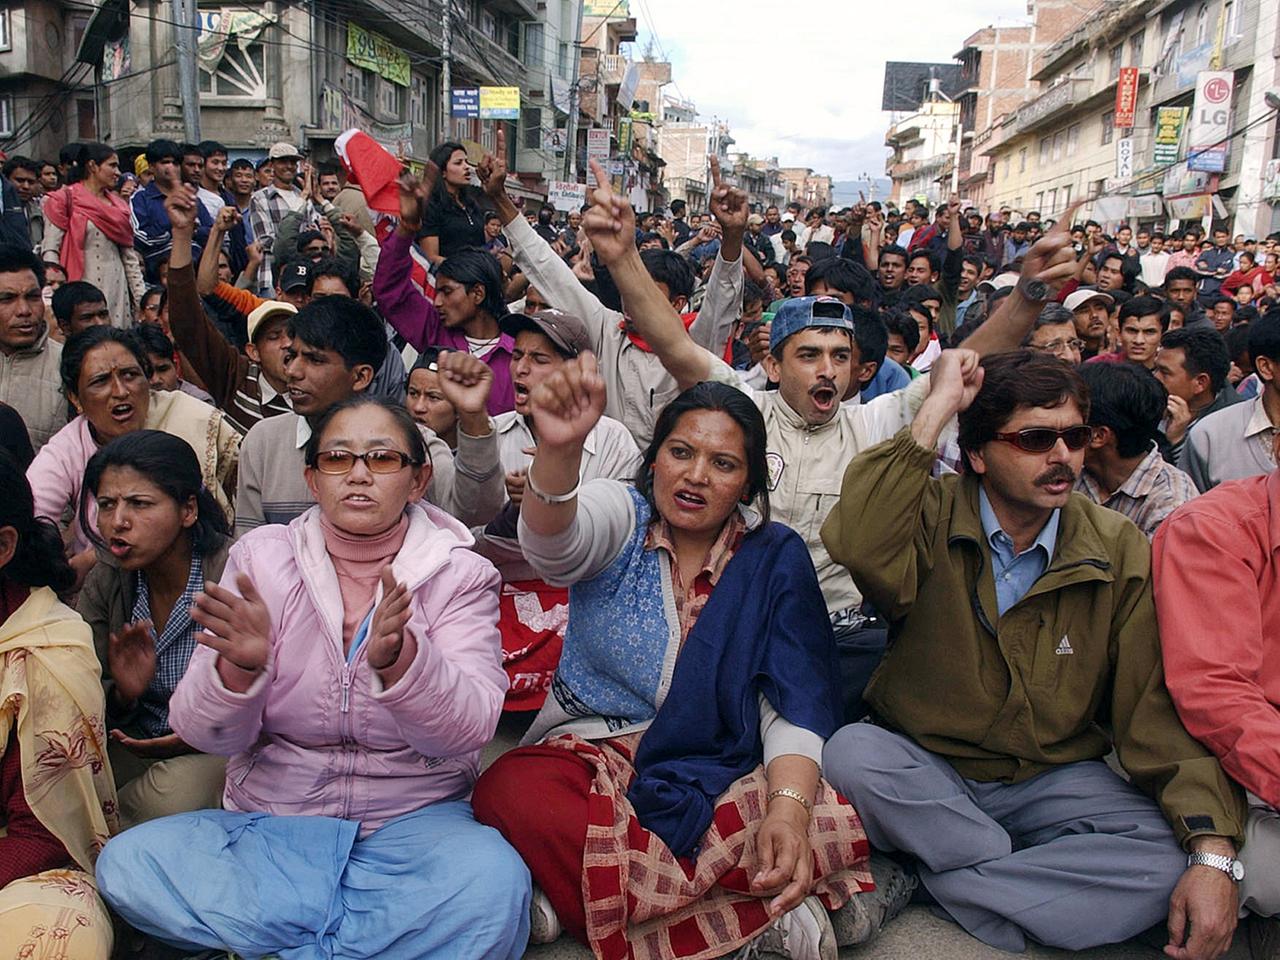 Eine große Menschenmasse sitzt auf einer Straße auf dem Boden, reckt Fäuste in die Luft und ruft Parolen.